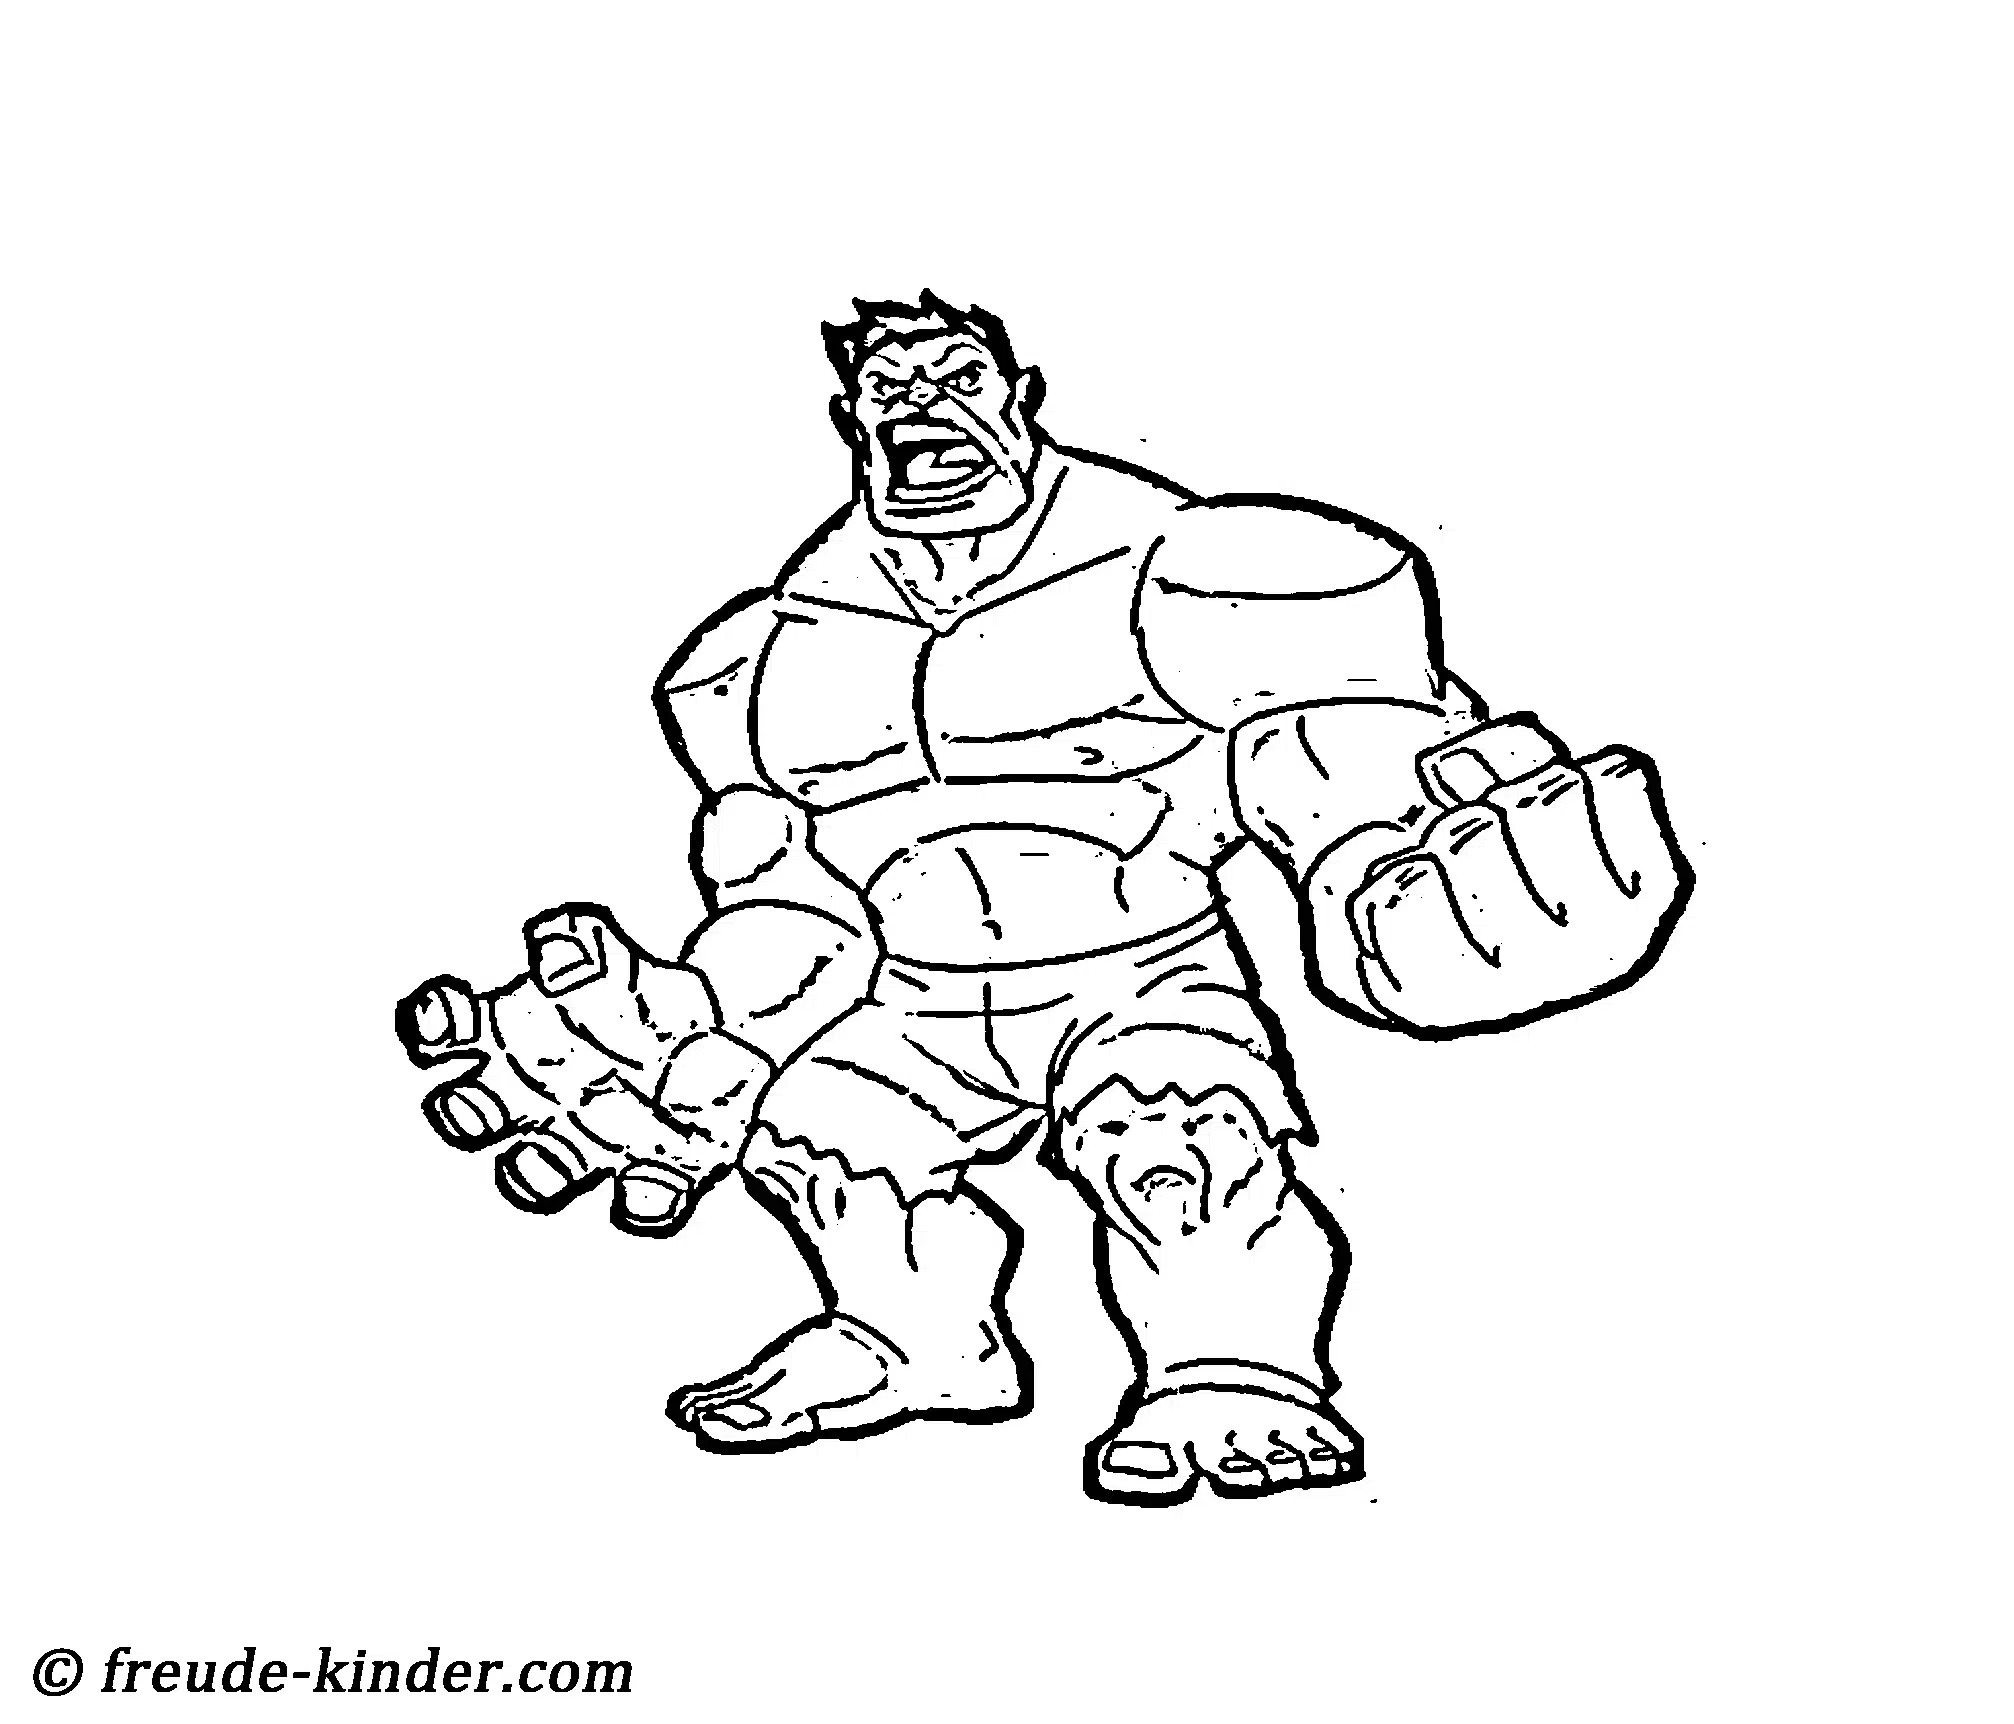 Dibujos de Hulk para colorear fáciles PDF - Dibujos para colorear,  Plantillas de páginas para colorear para que los niños impriman -  